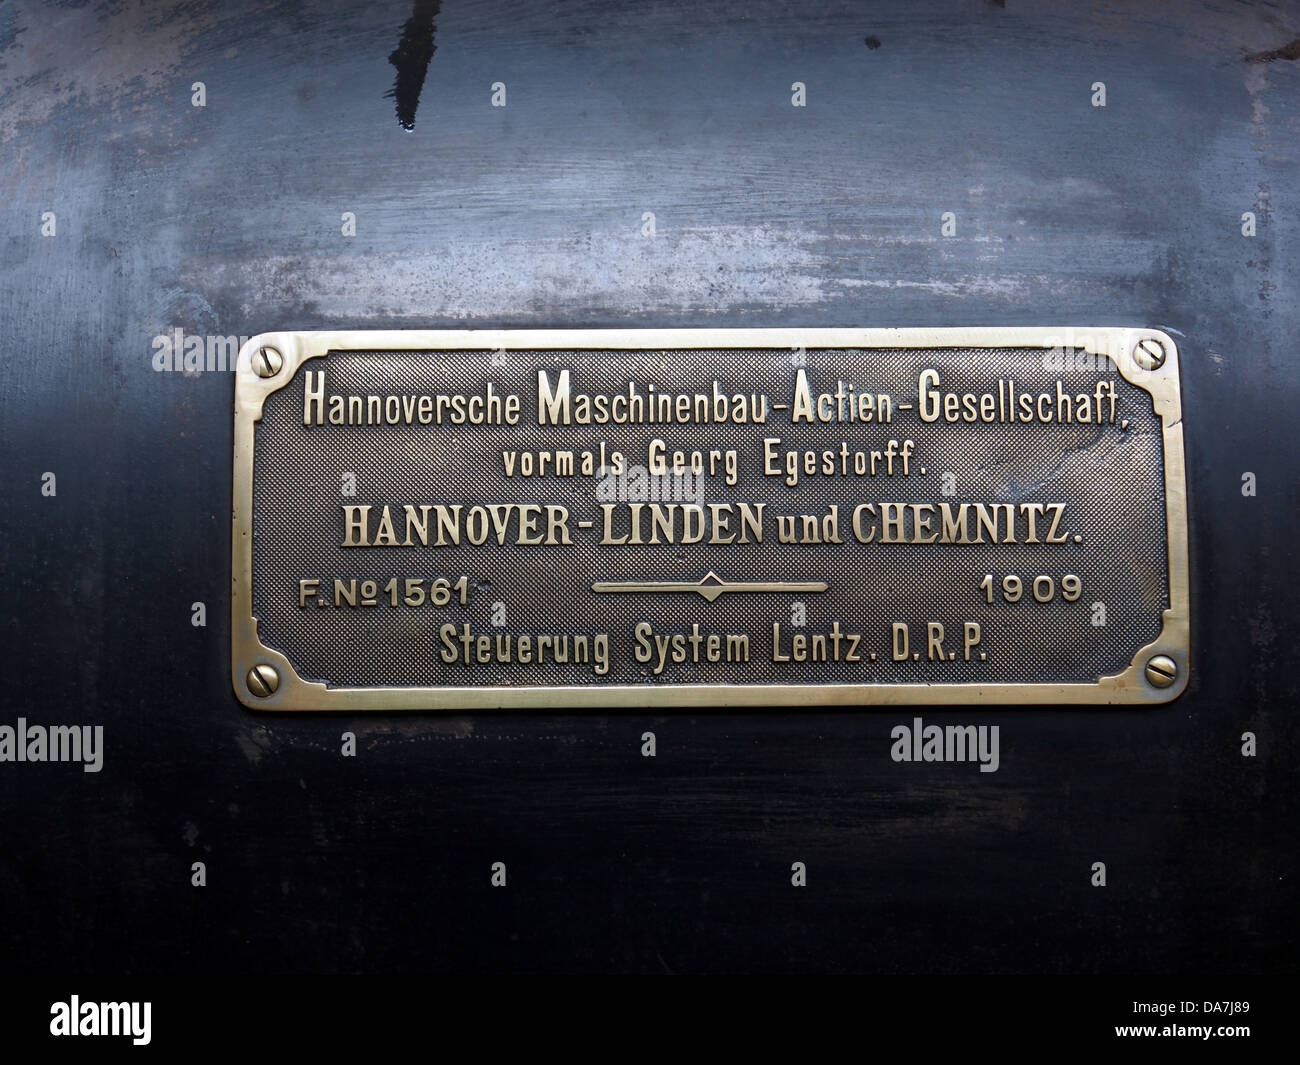 1909 Hannoversche Maschinenbau AG machine à vapeur (vormals Georg Egestorff), Hannover-LINDEN und CHEMNITZ au Religiueze Stoommachine Ketelhuis Windraak Banque D'Images